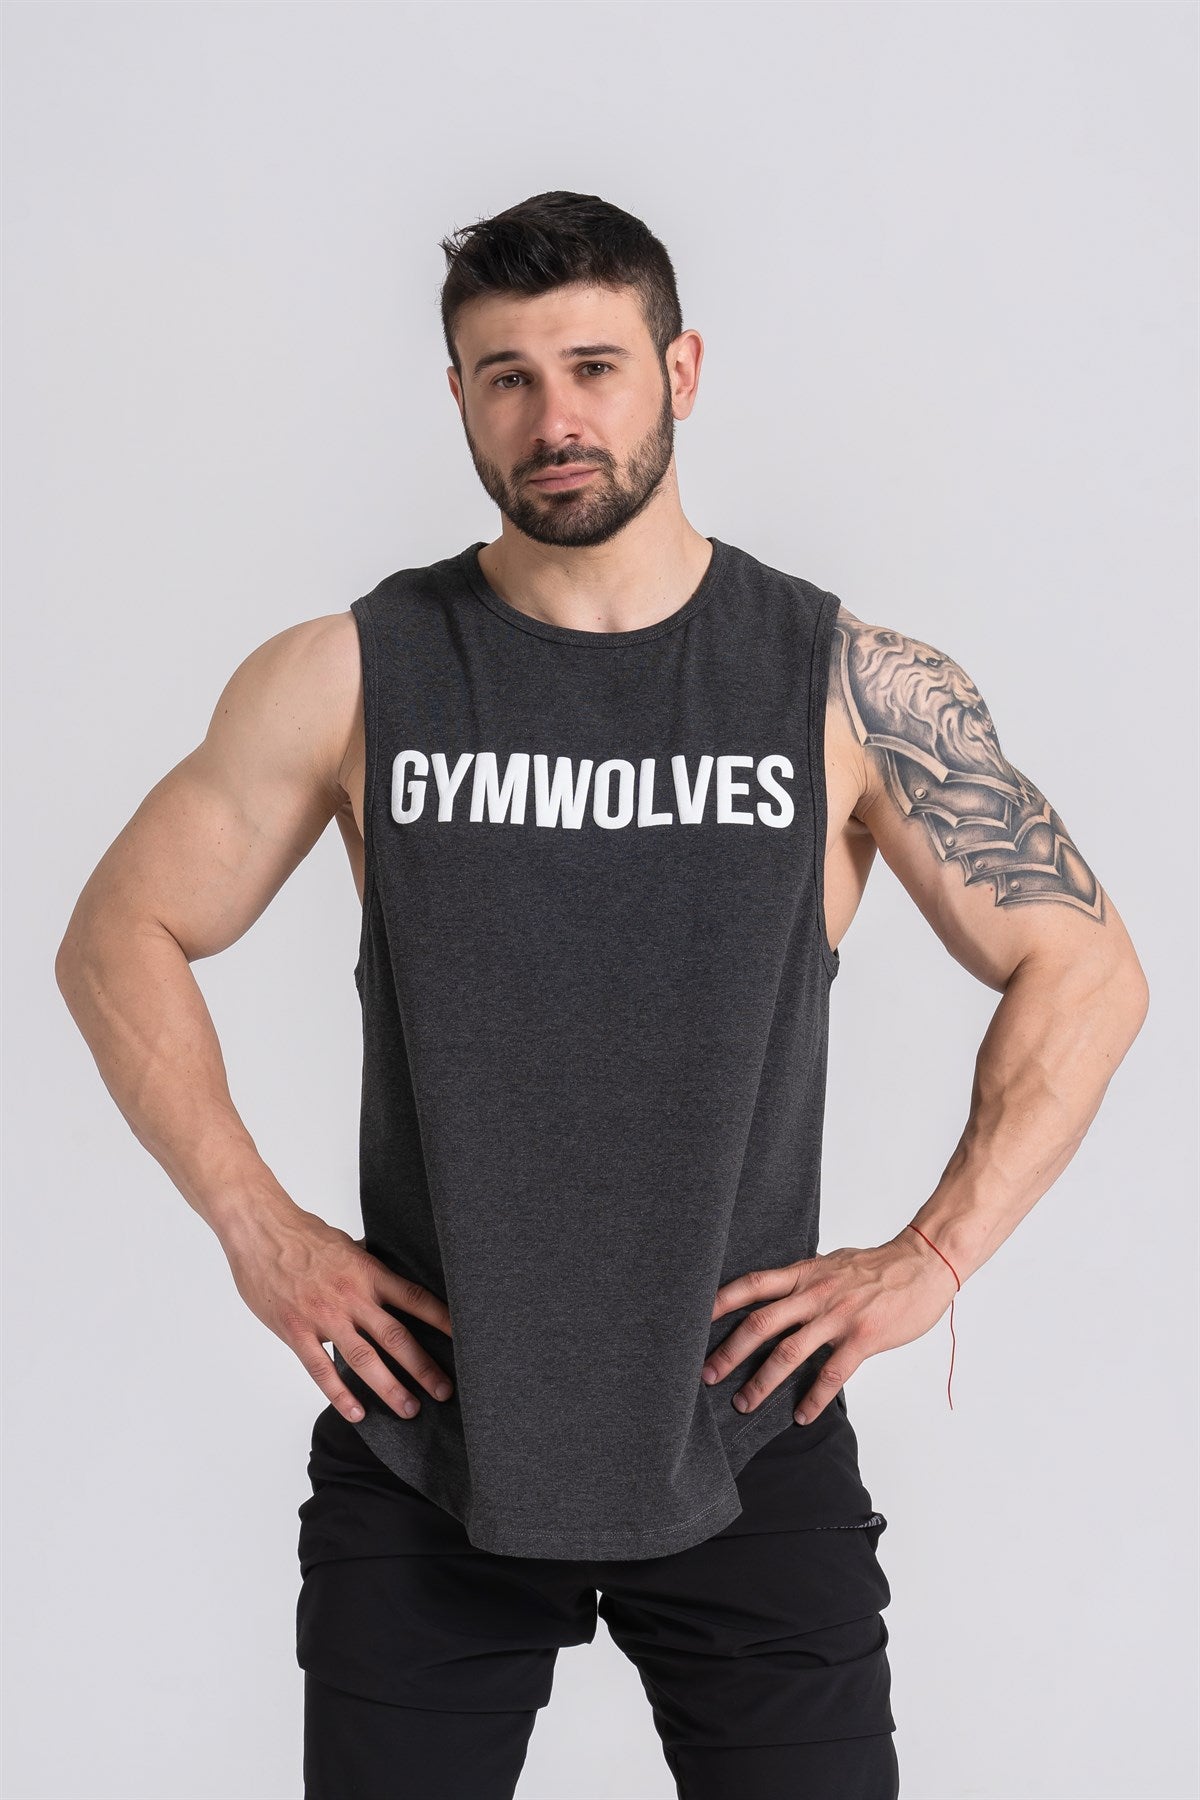 Gymwolves Man Sleeveless T-Shirt | Man Sport T-shirt | Workout Tanktop |